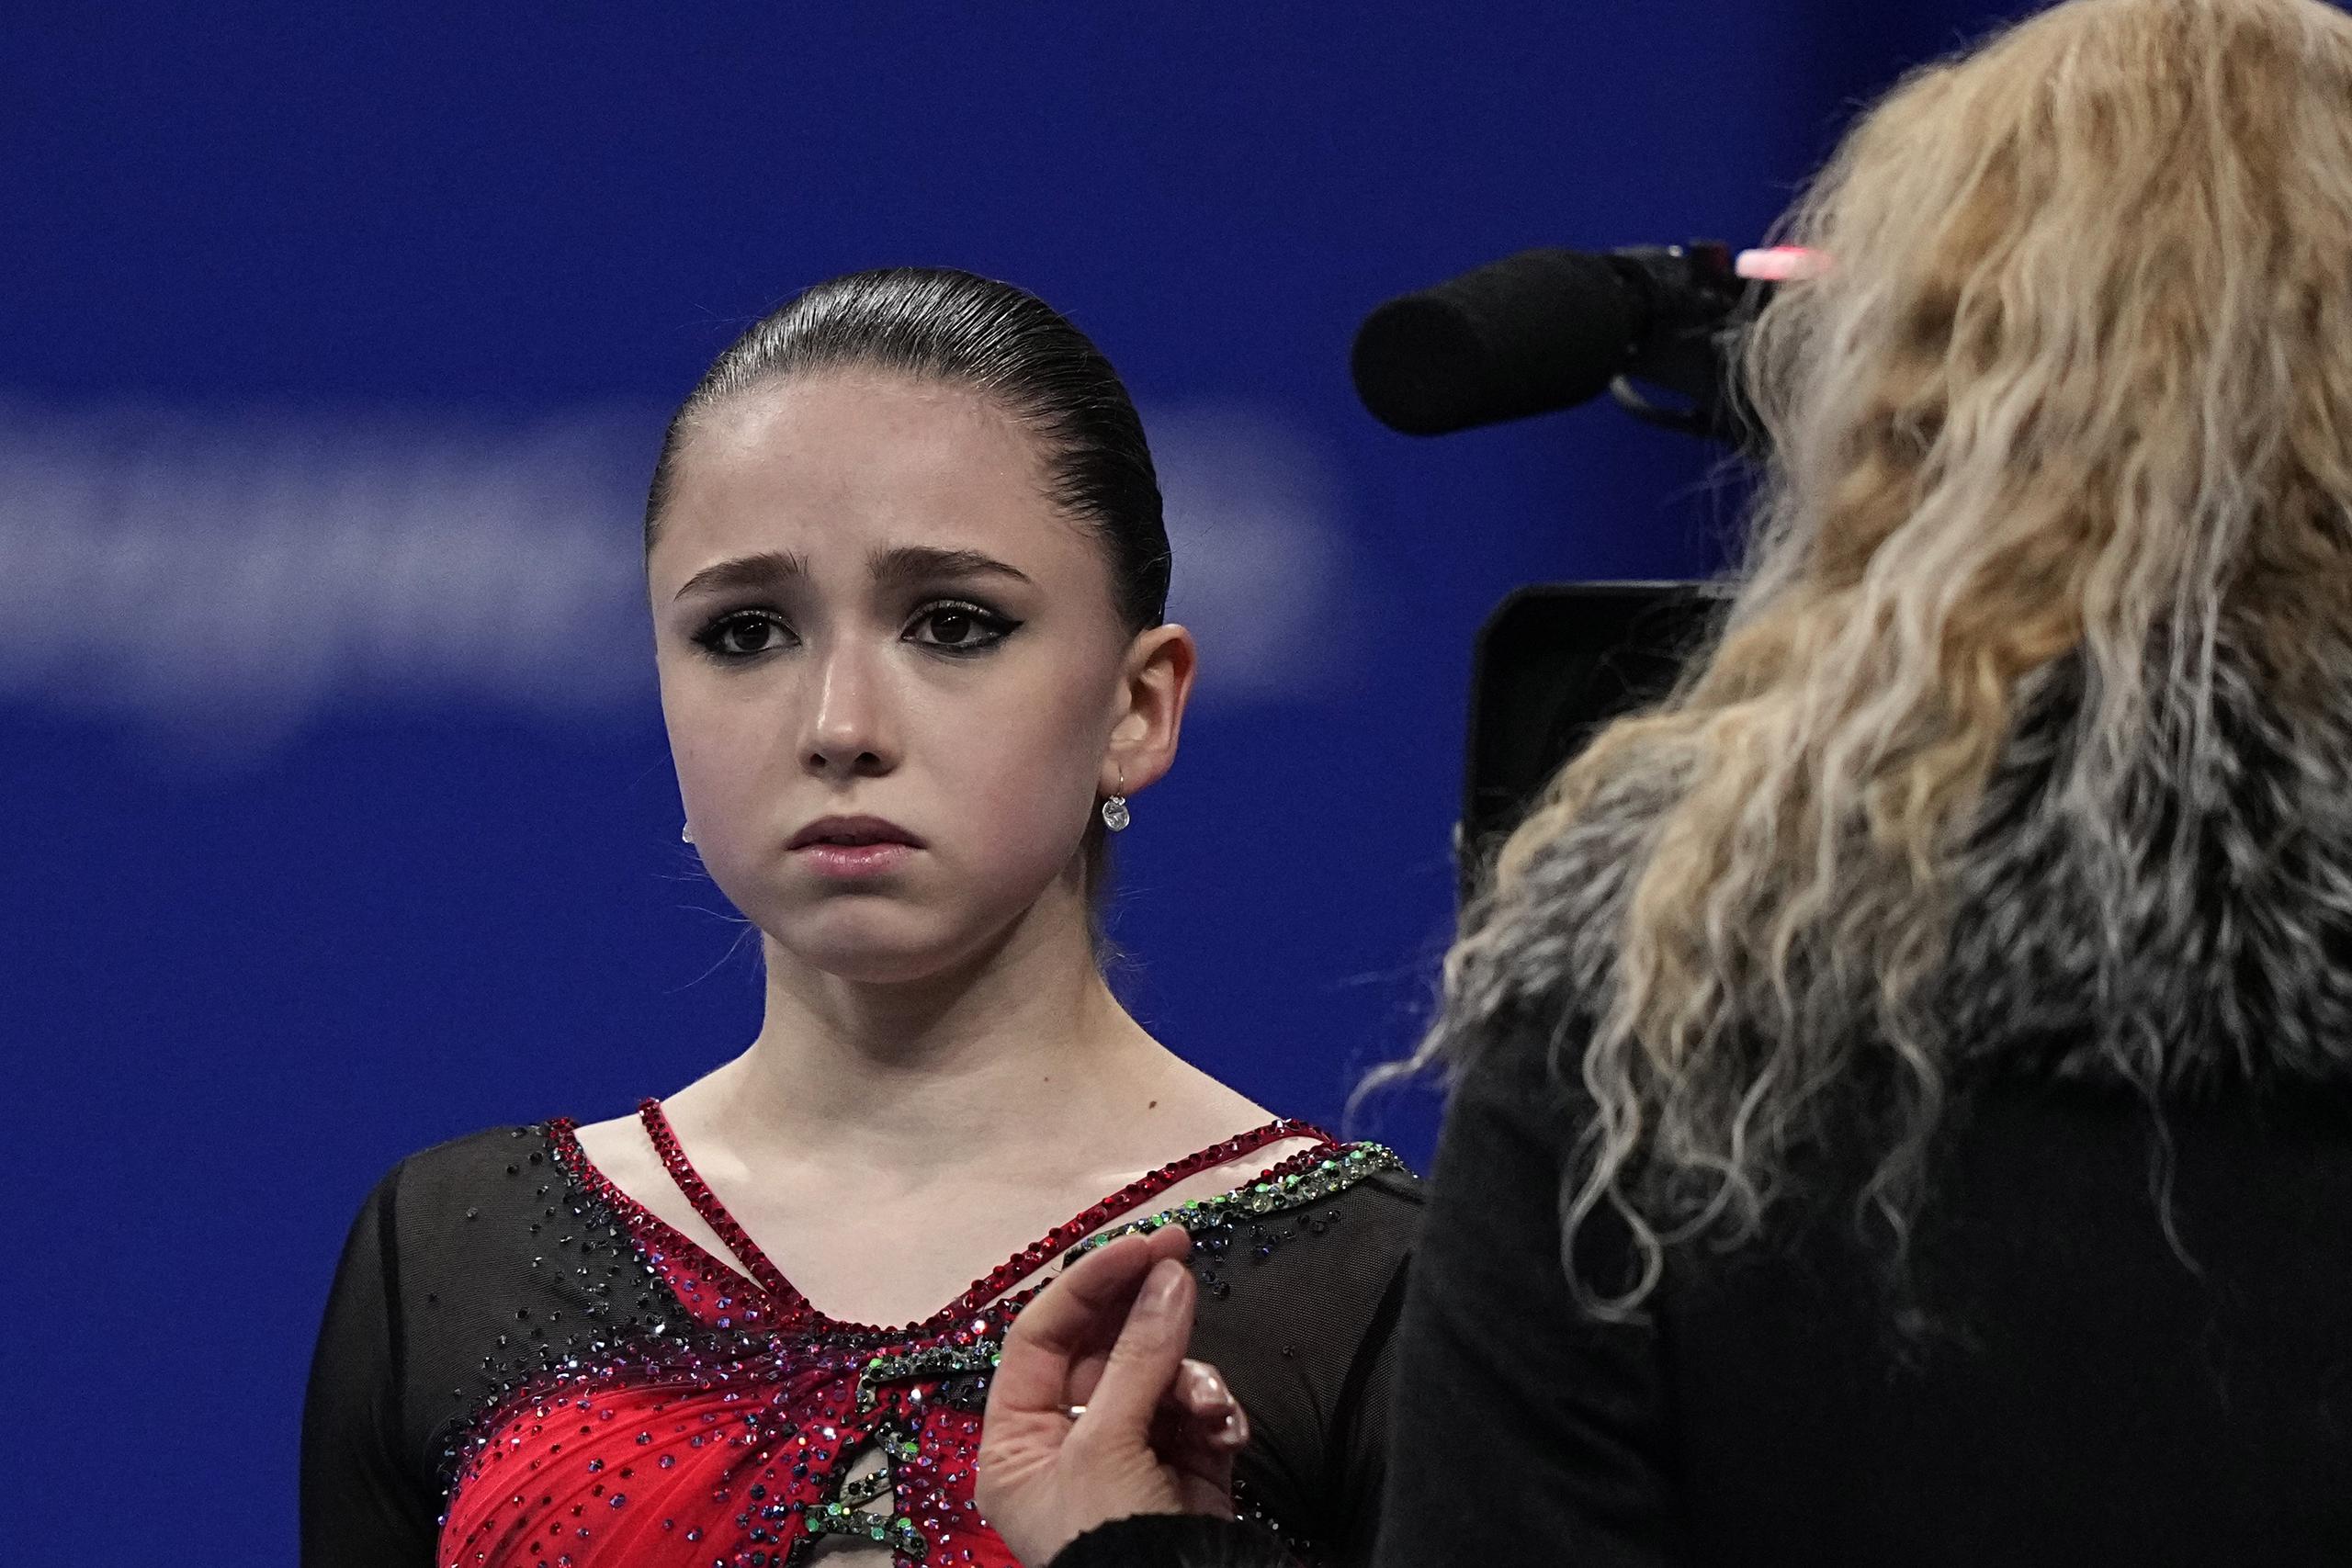 El rostro de Valieva refleja su angustia al recibir una reprimenda de su entrenadora Eteri Tutberdize al finalizar la rutina en la que se cayó el jueves. 